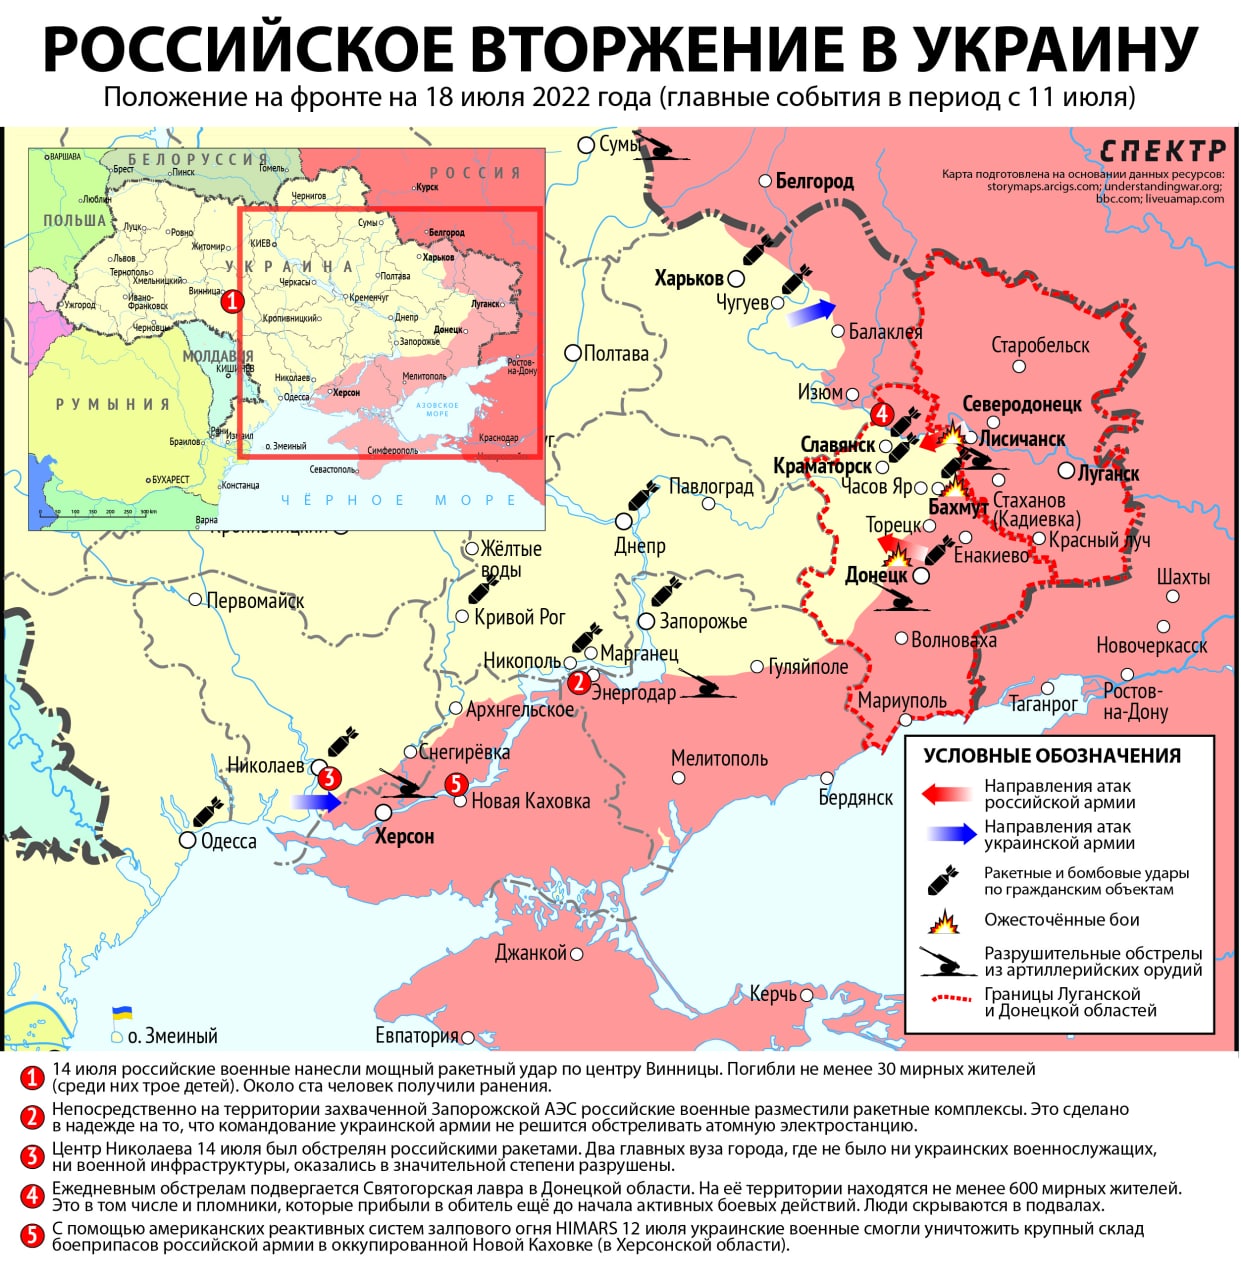 Карта российского вторжения в Украину - 11-18 июля 2022 года. 